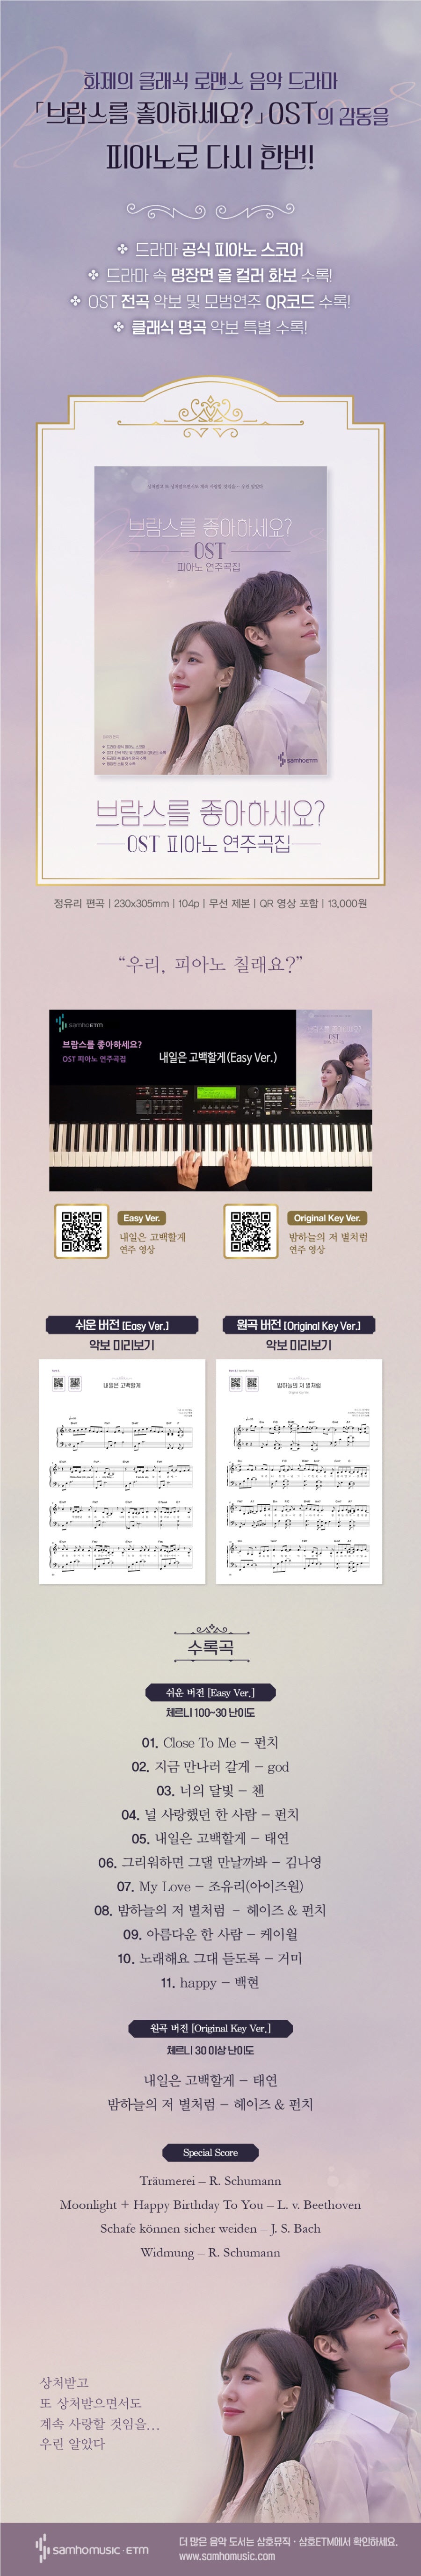 ¿Te gusta Brahms Ost Piano ScoreBook